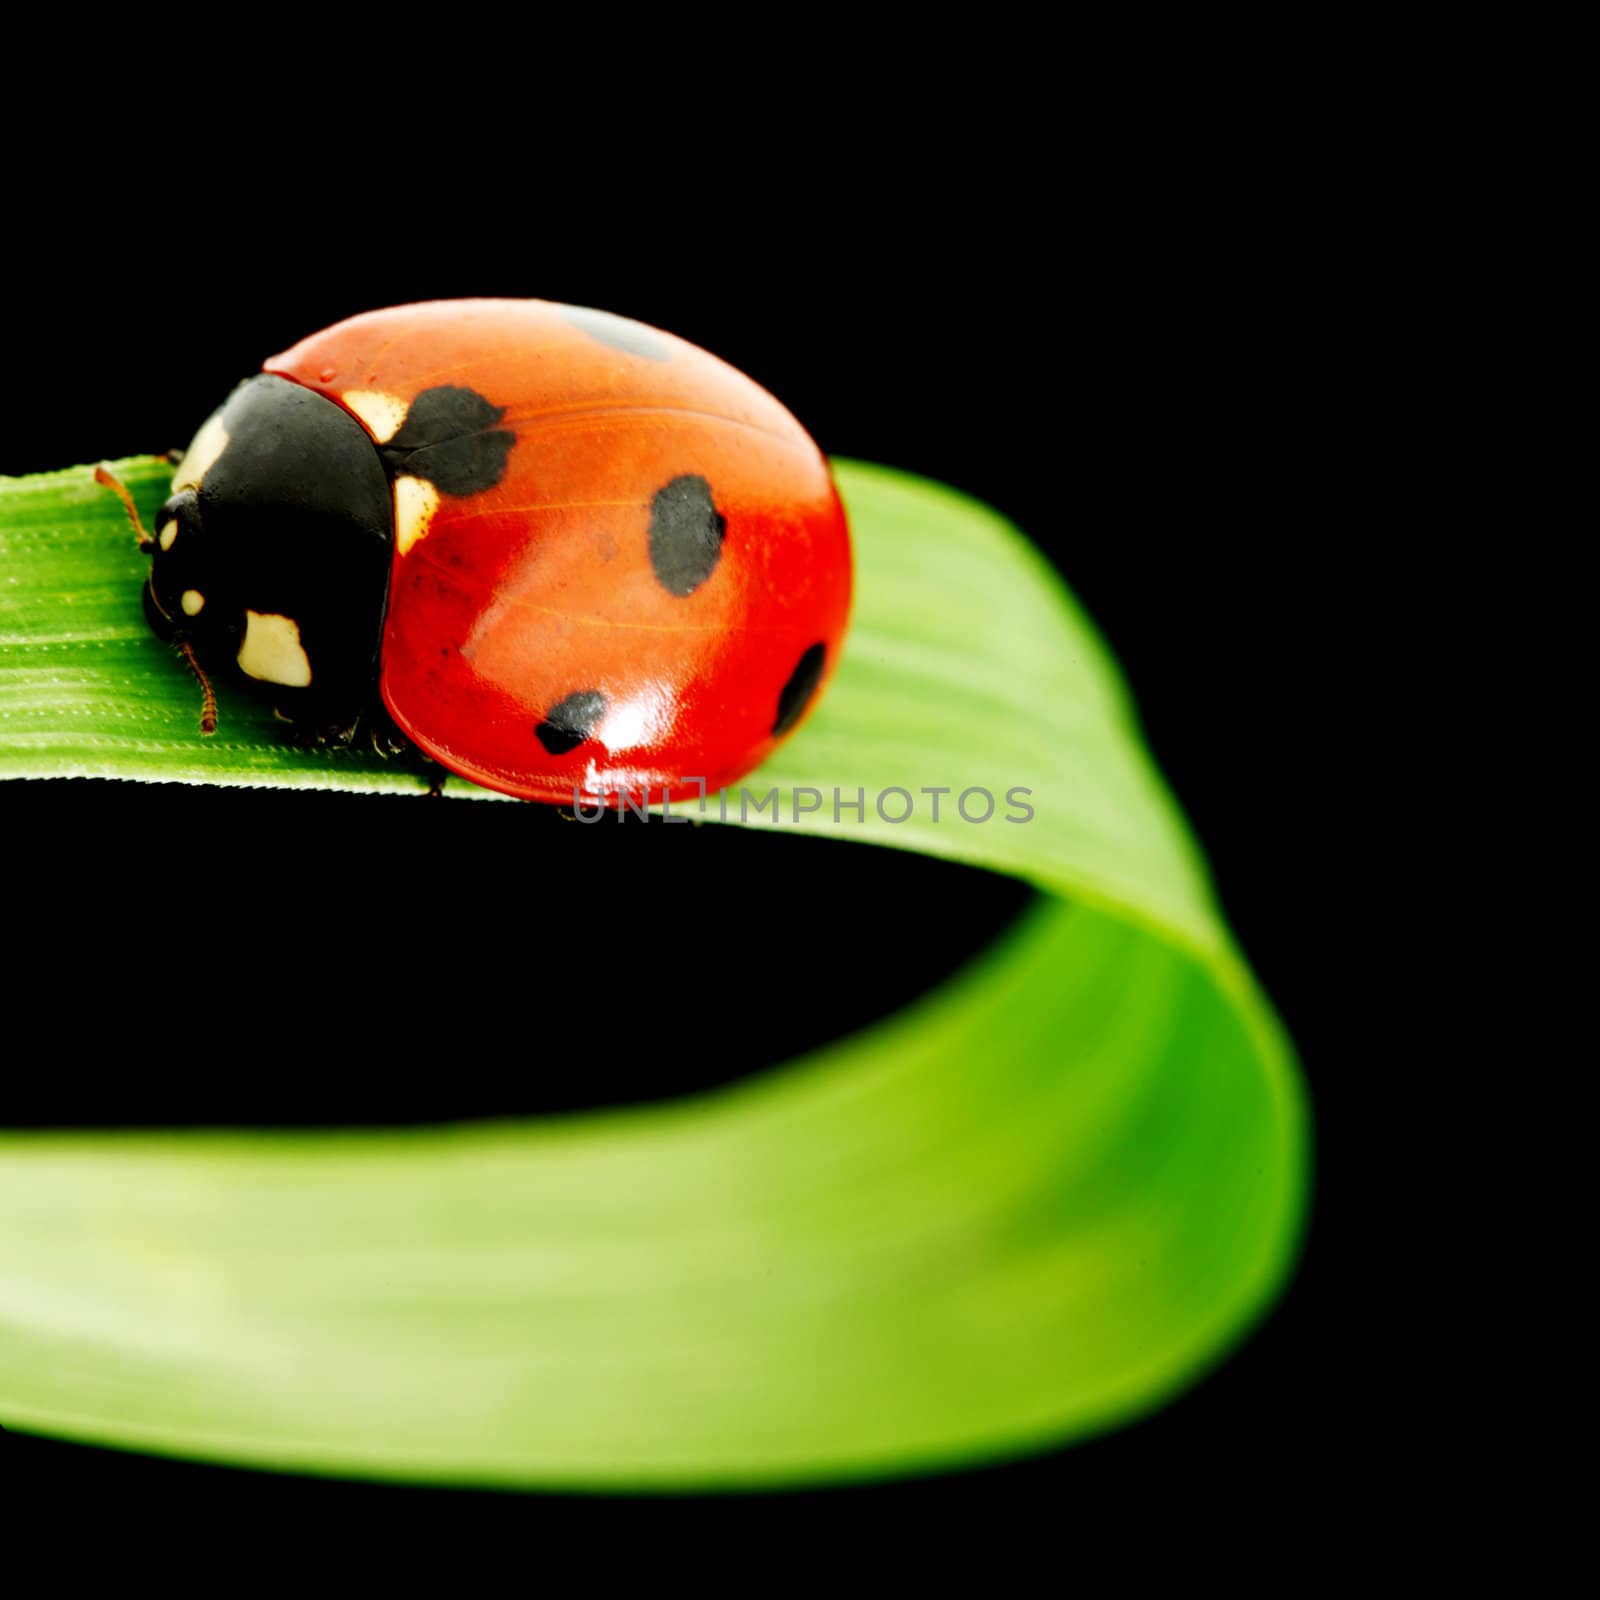 ladybug on grass isolated black background